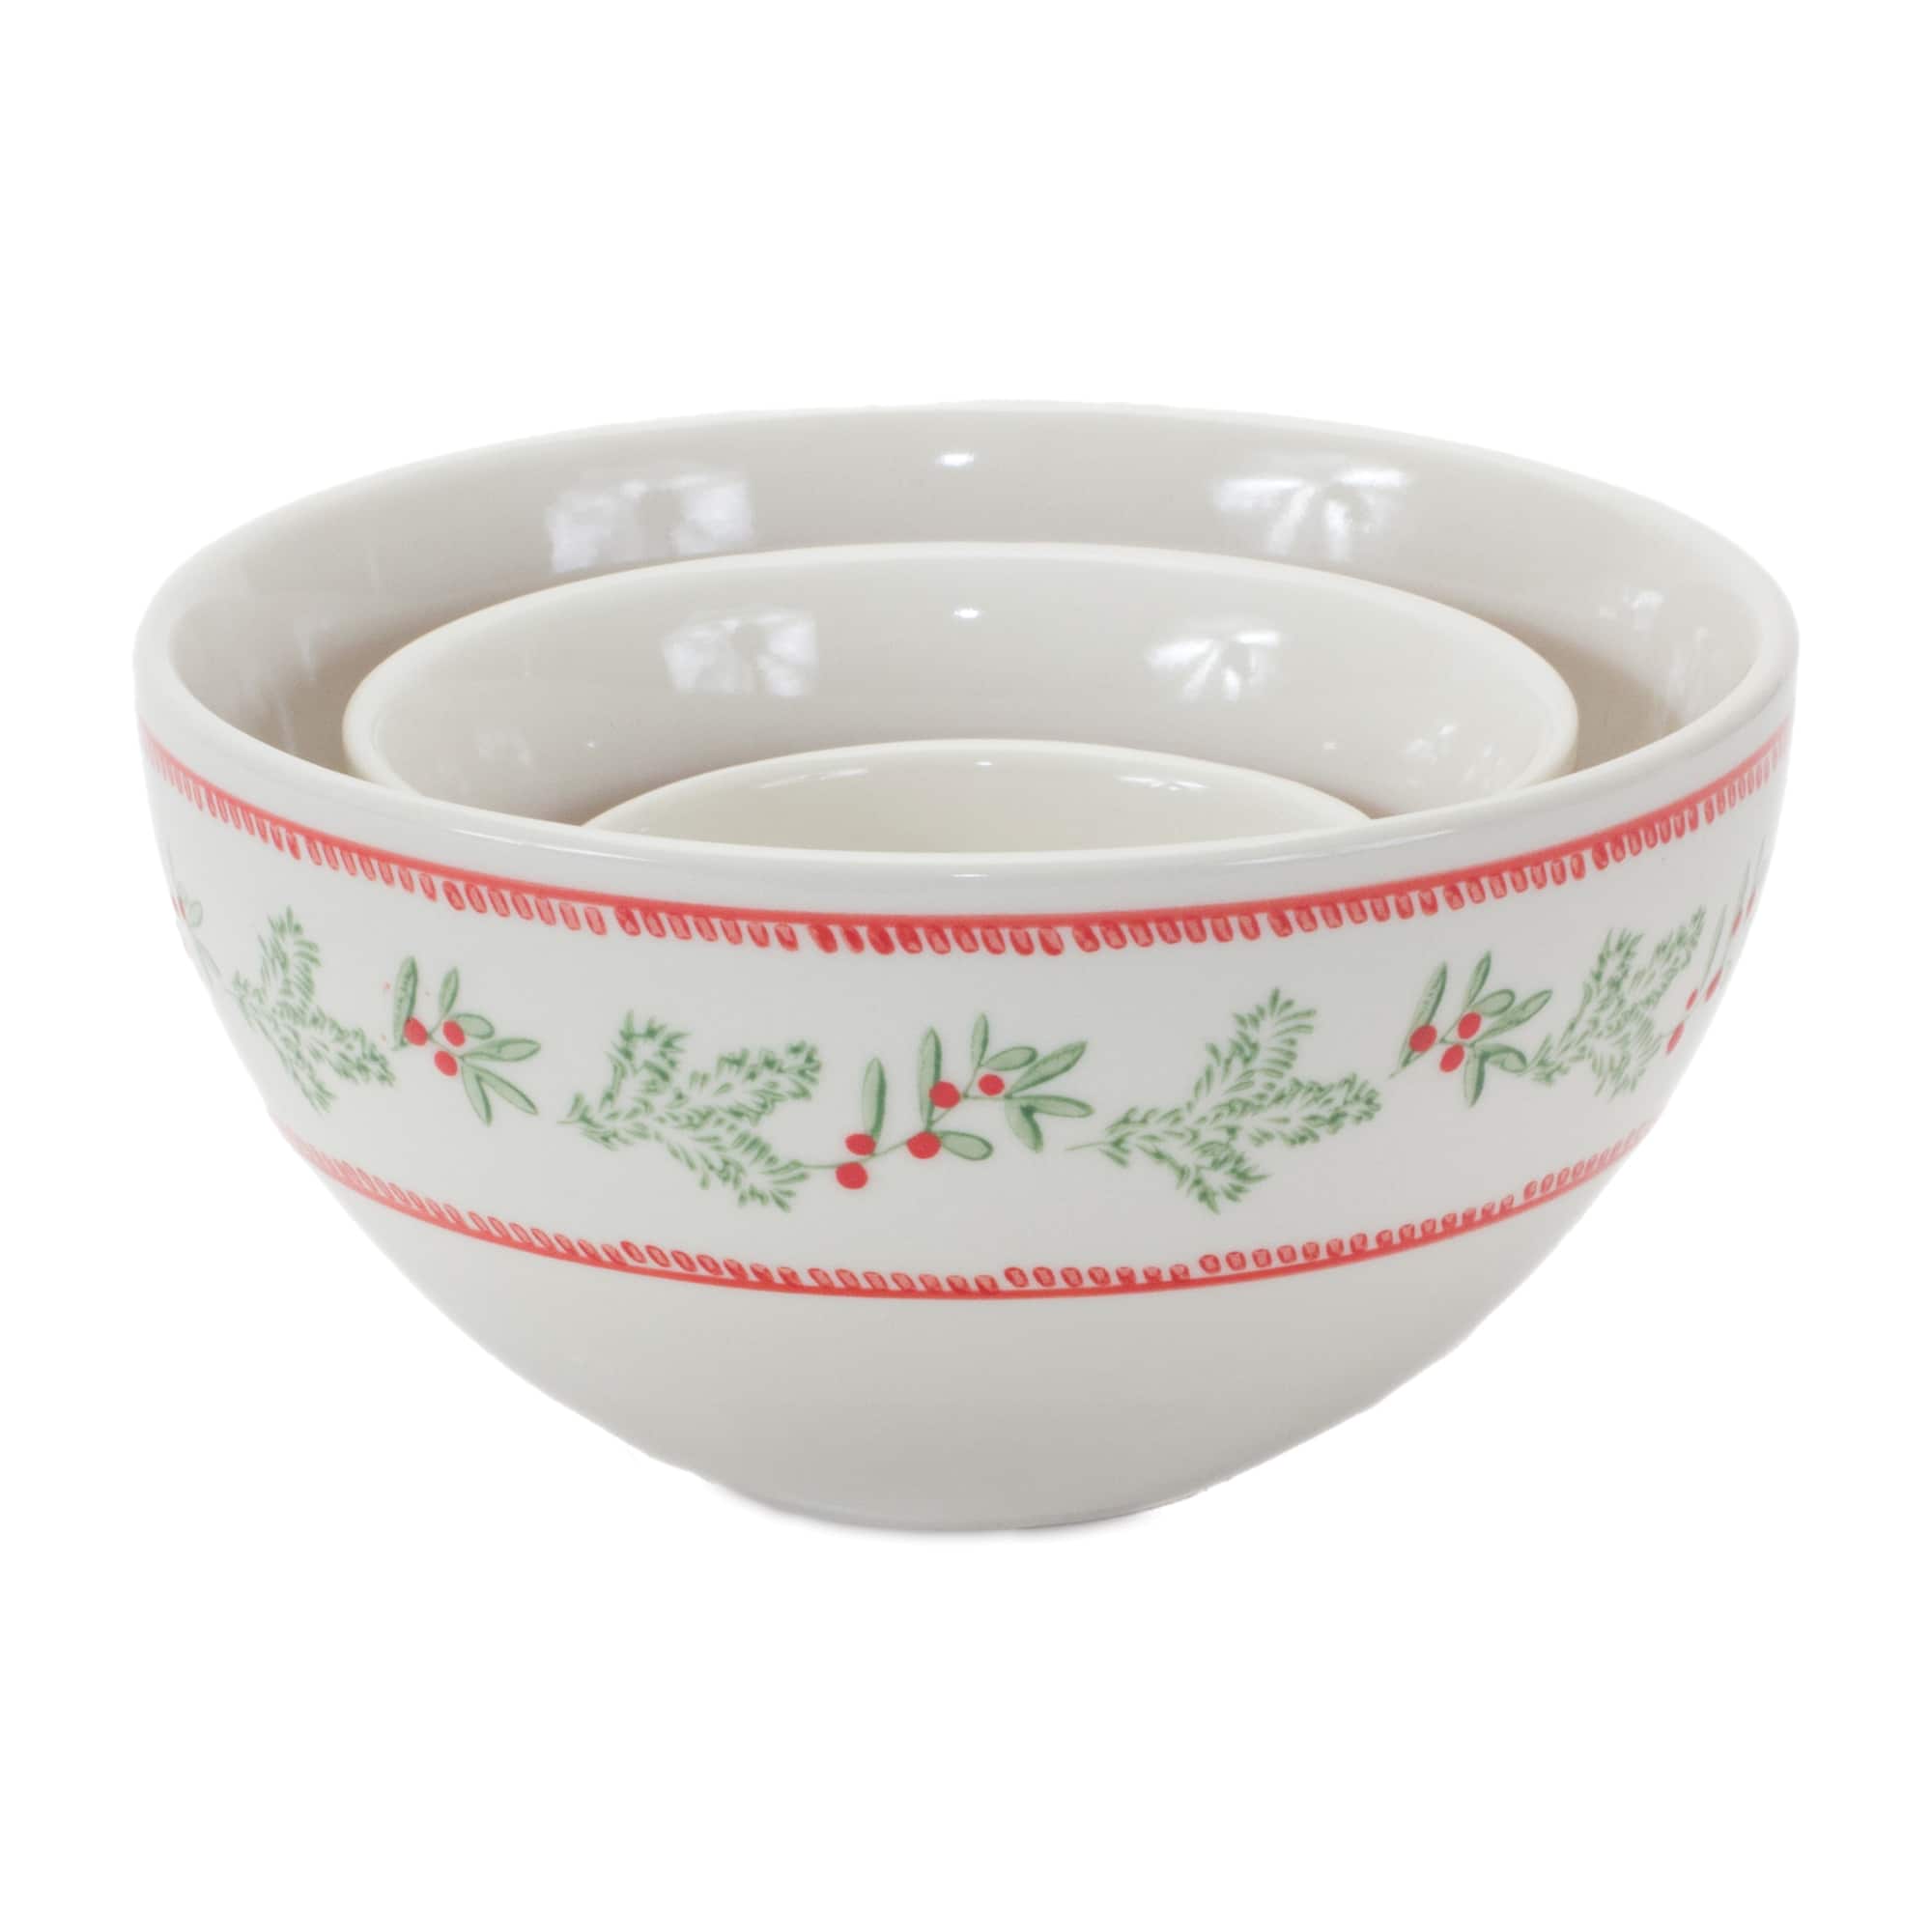 Mistletoe &#x26; Pine Holiday Stoneware Bowl Set, 3.5&#x22;, 5&#x22; &#x26; 6.75&#x22;